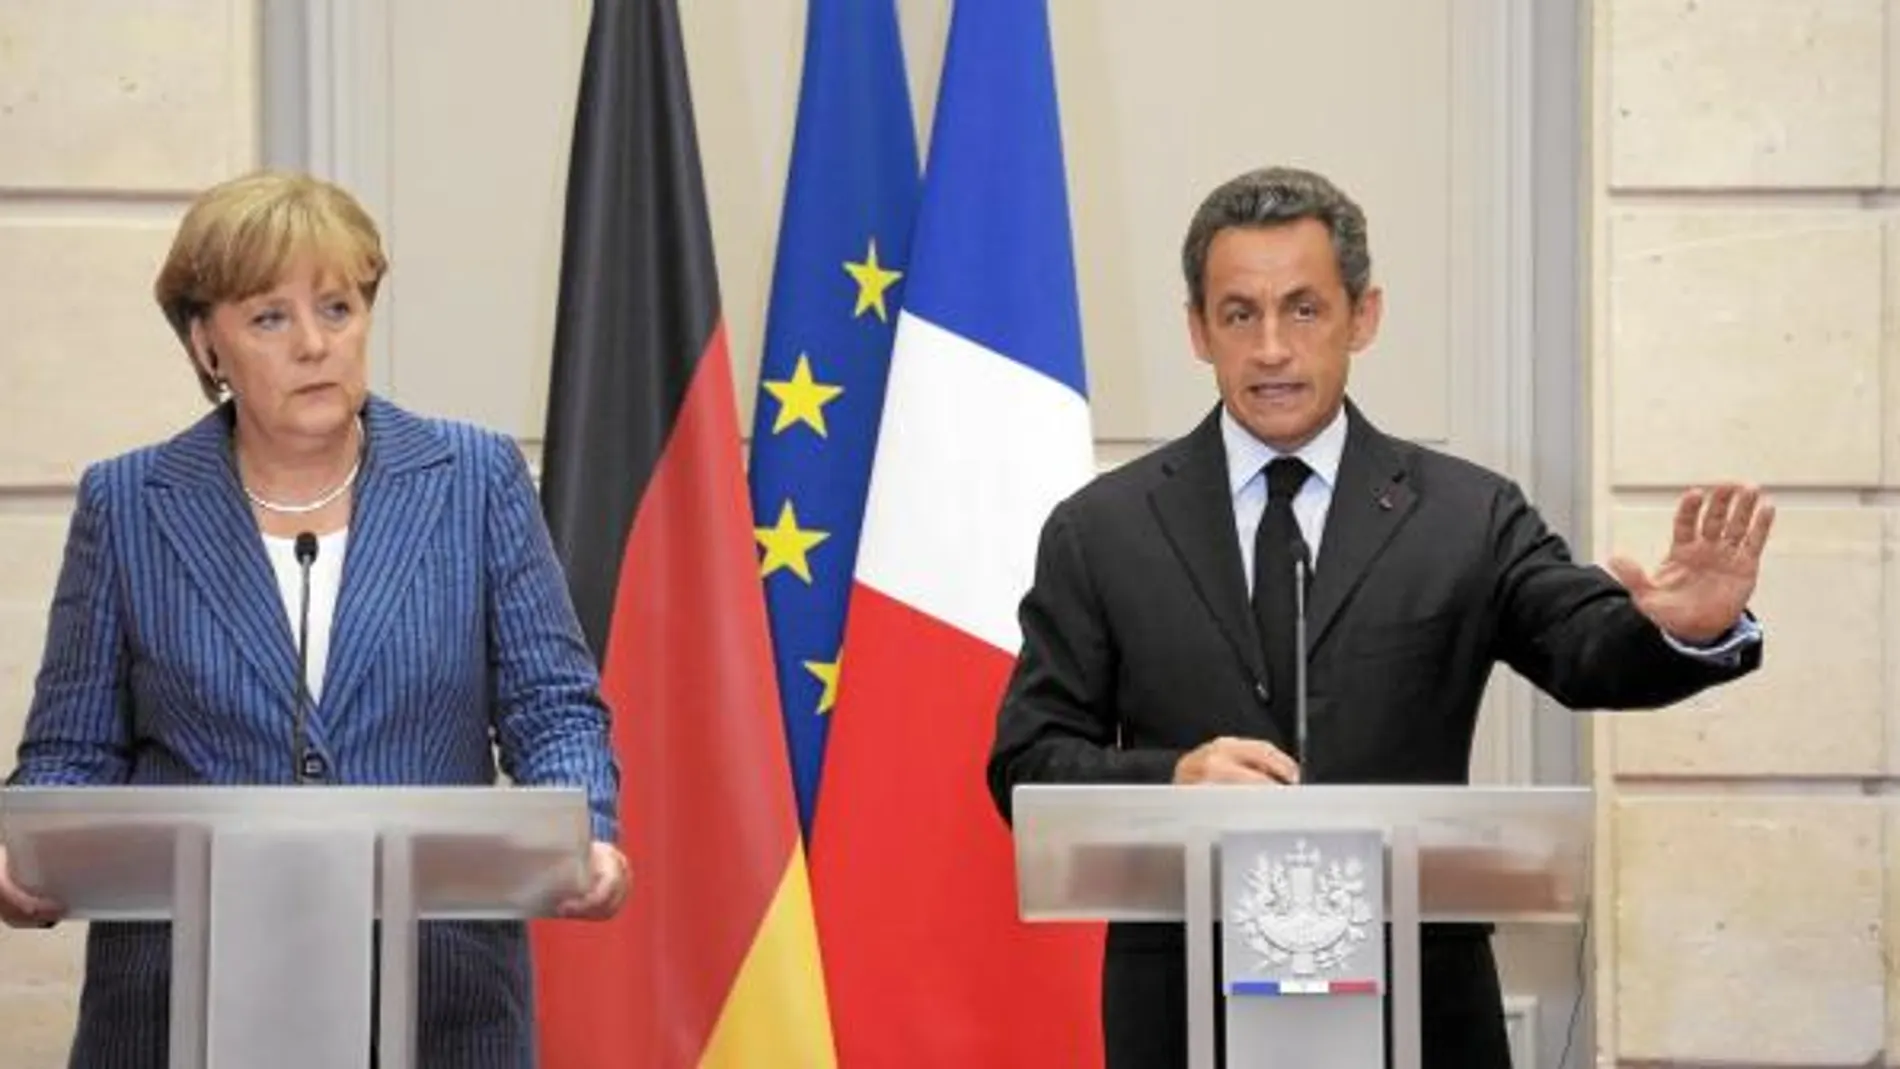 las bases Merkel y Sarkozy insistieron ayer en que la convergencia franco-alemana debe ser la base de la nueva gobernanza económica de la zona euro